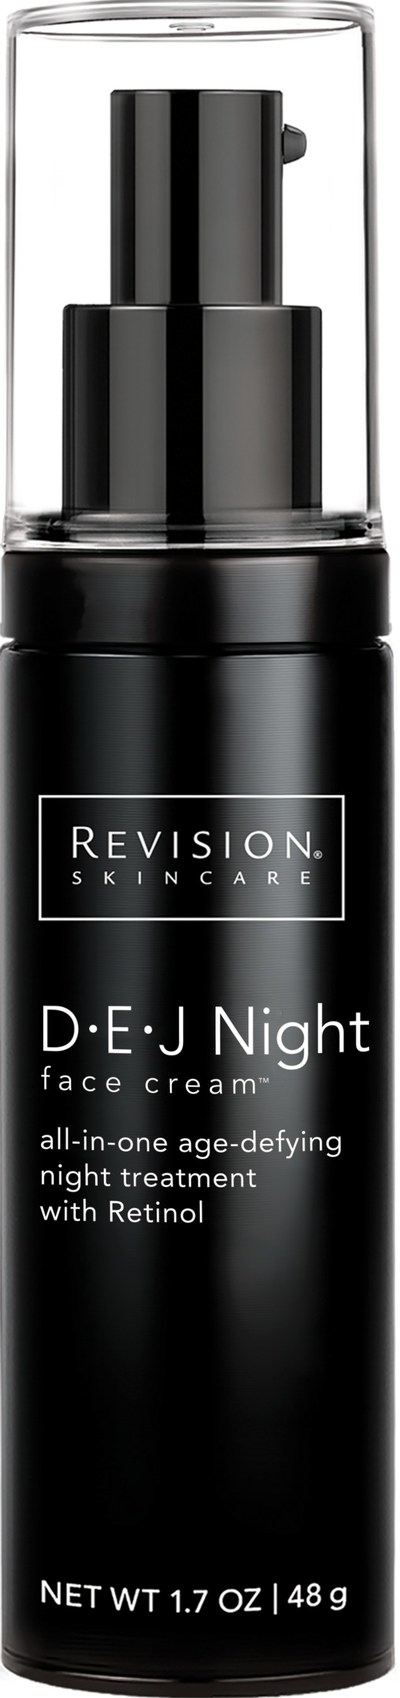 Revision Skincare® DEJ Night face cream™, www. Revisionskincare.com